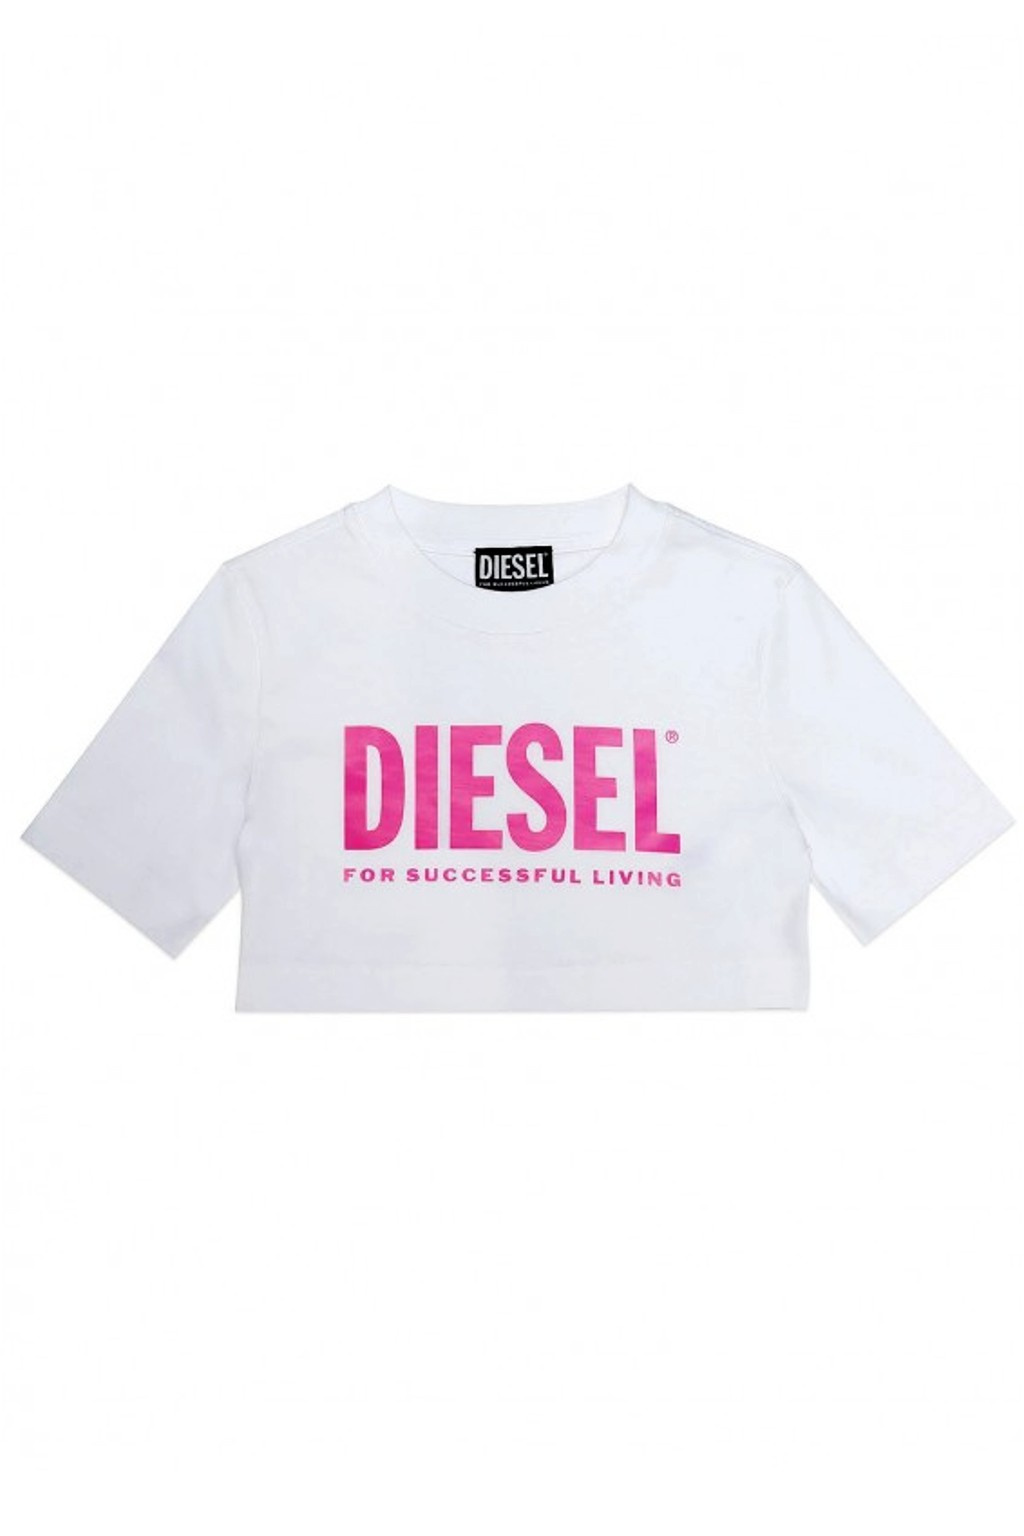 Dětské tričko Diesel J0061000YI9 bílé